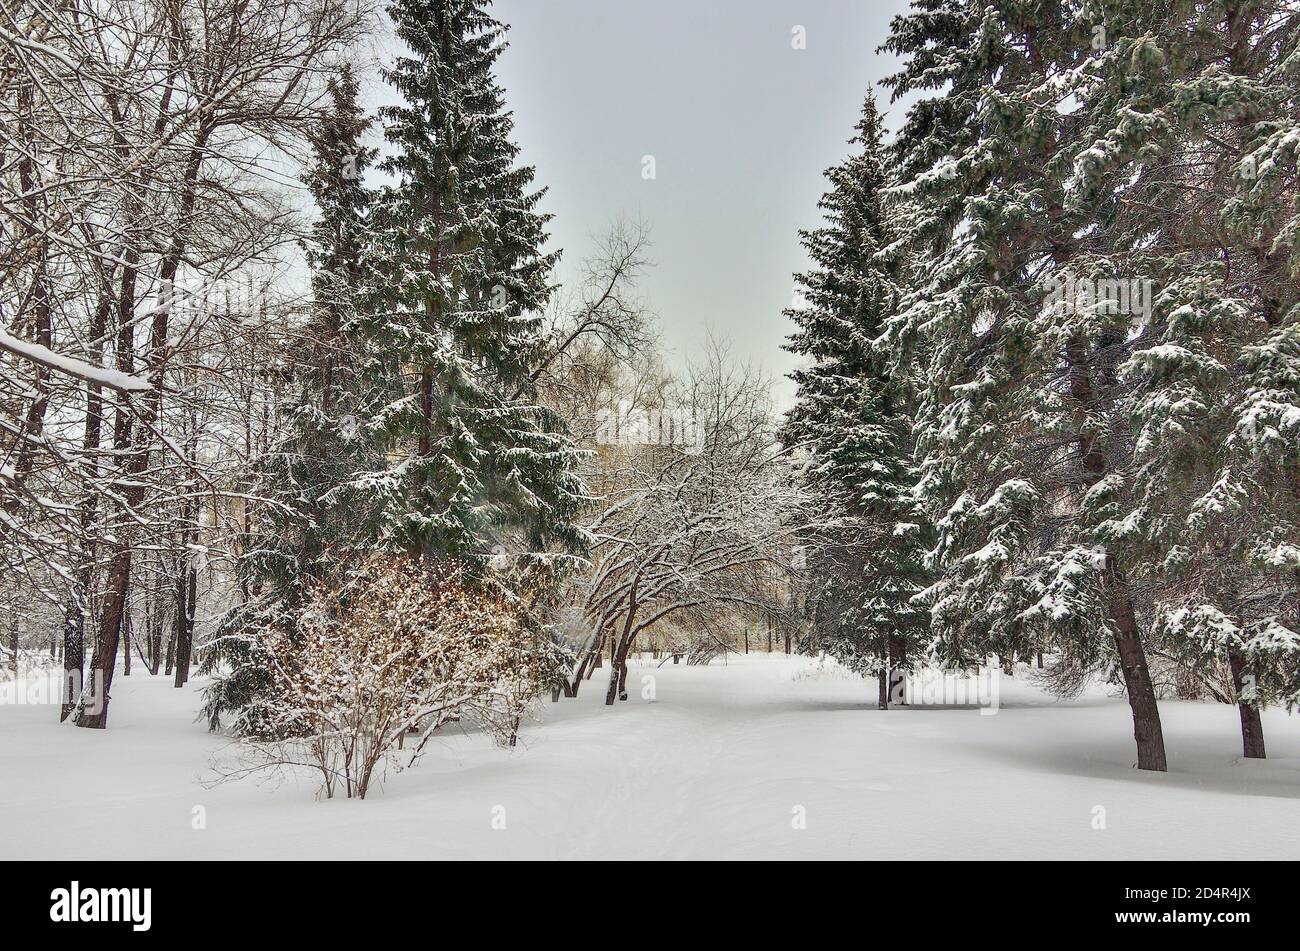 Schönheit der Winterlandschaft im verschneiten Stadtpark. Wunderland mit weißem Schnee und Reif bedeckten Bäumen und Sträuchern - schönes Wintermärchen. Flauschig Stockfoto